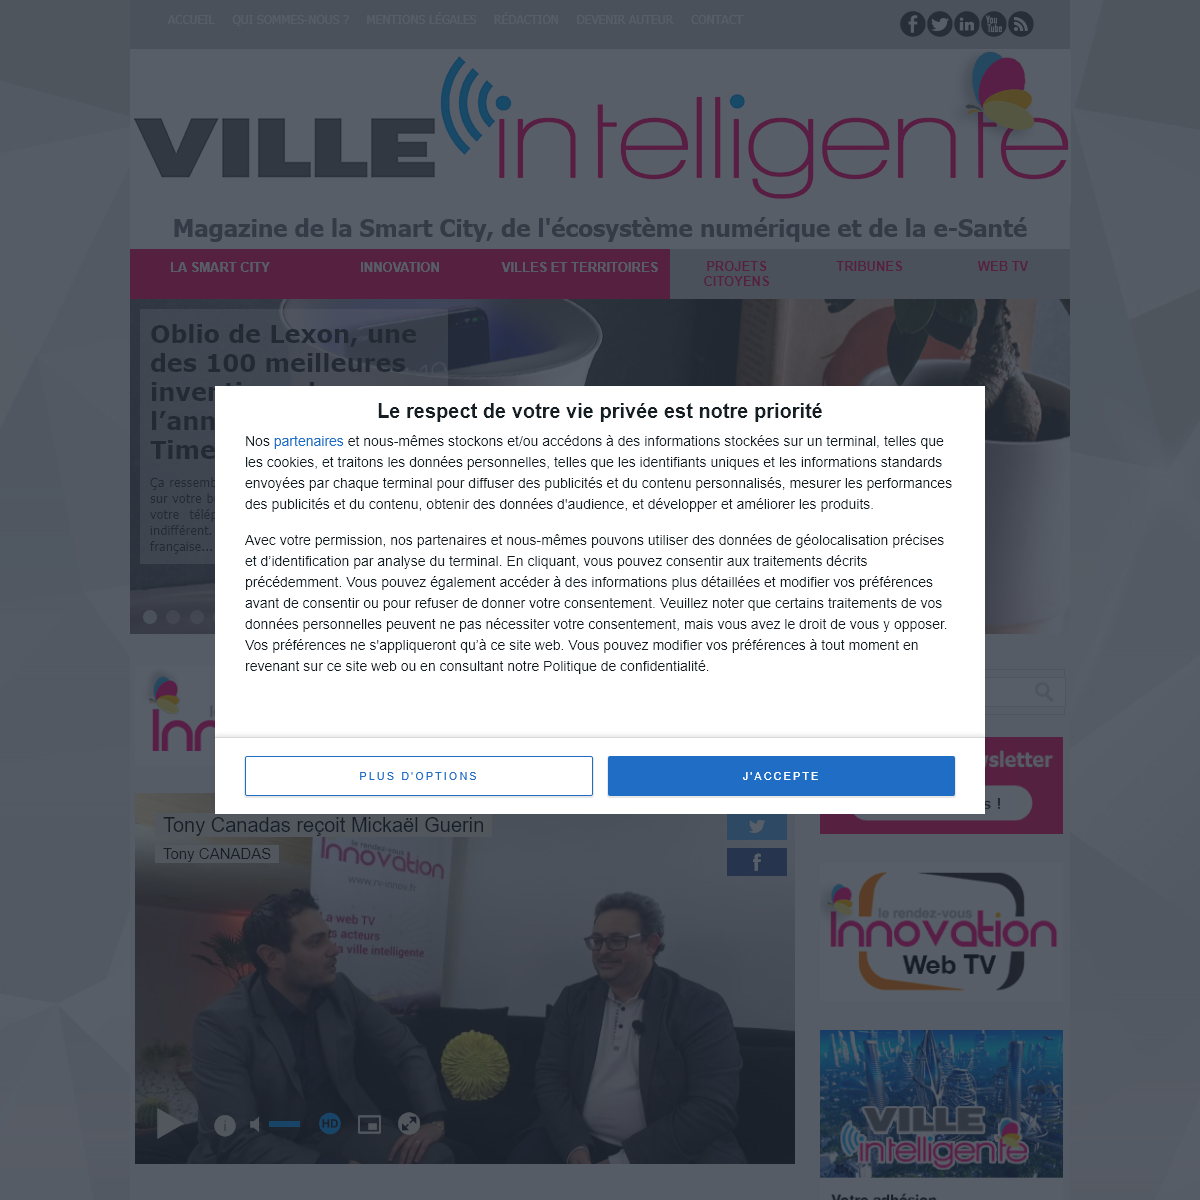 A complete backup of villeintelligente-mag.fr